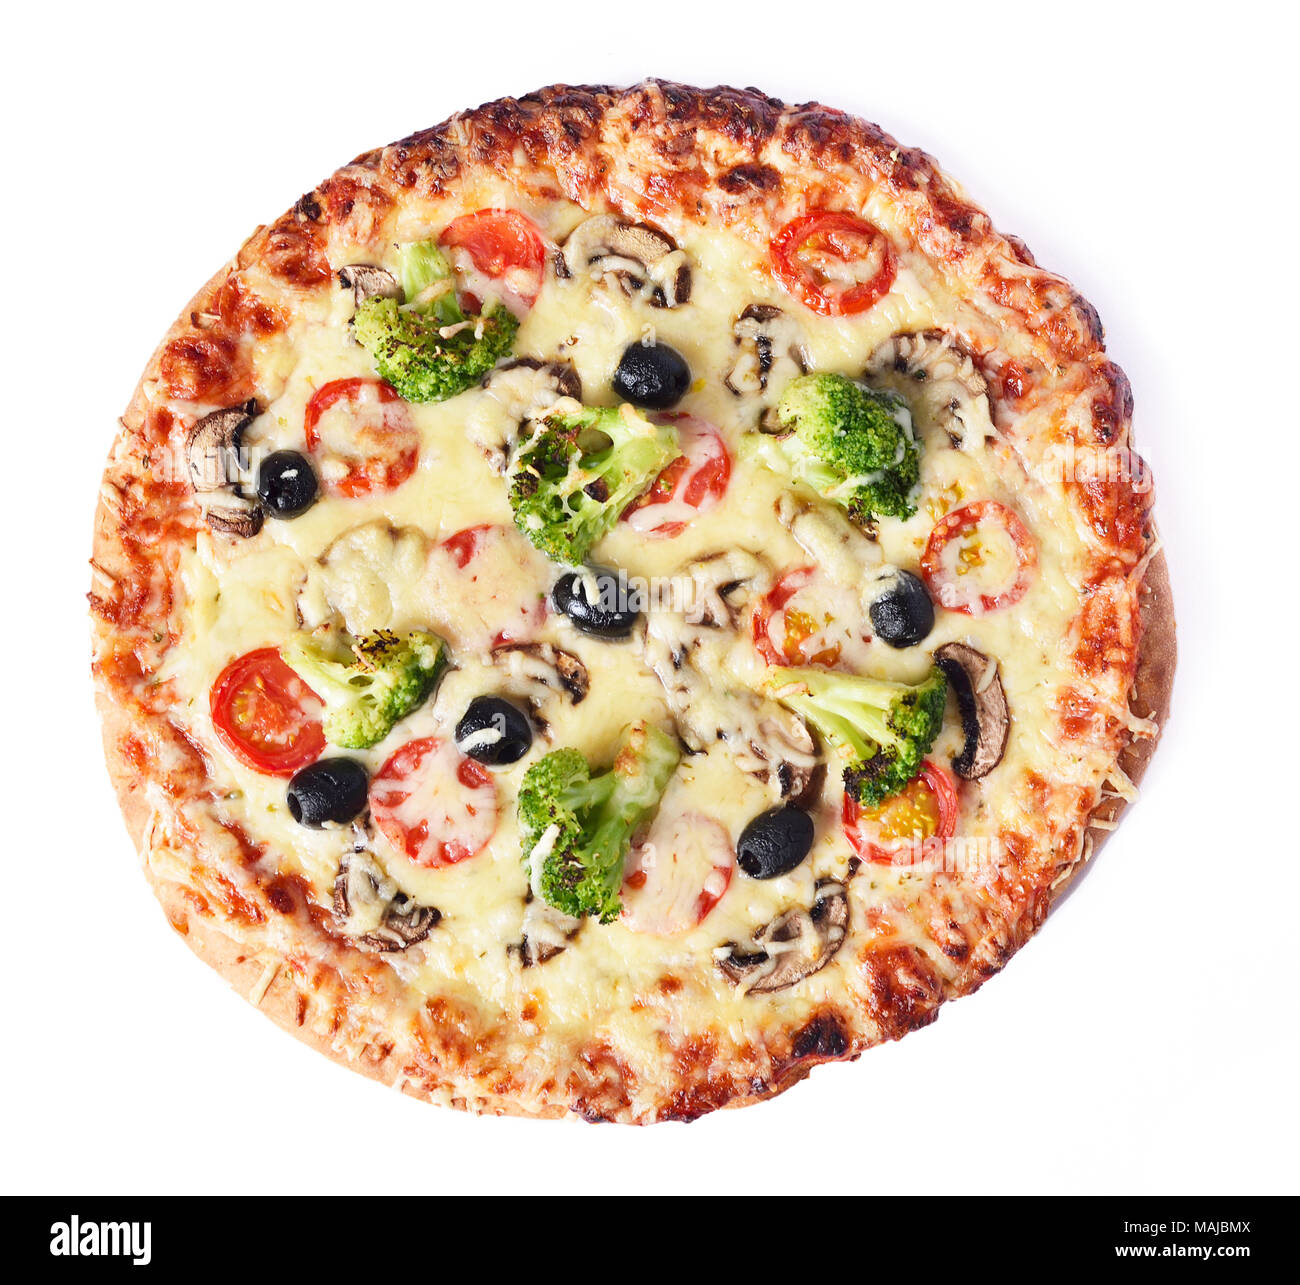 Pizza aux légumes, isolé sur fond blanc.High angle view of a pizza végétarienne avec champignons, tomates fraîches, olives, du brocoli et du fromage. Banque D'Images